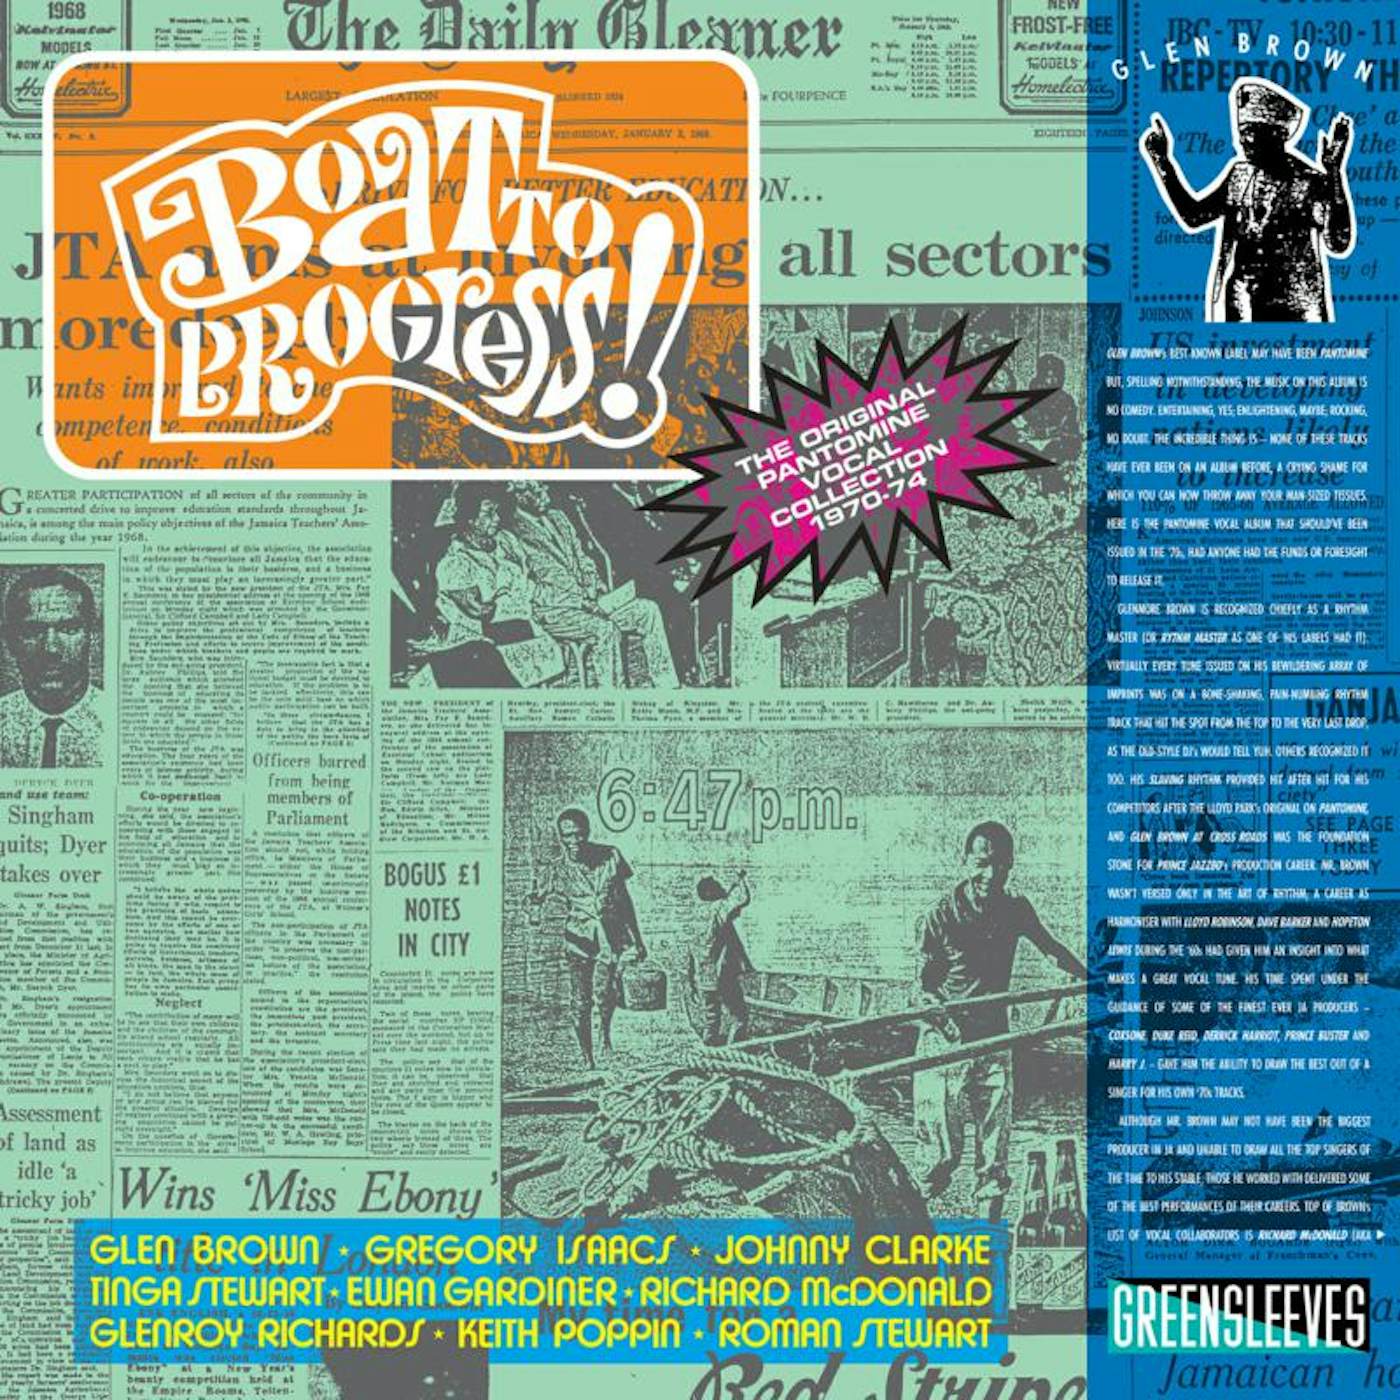 Glen Brown LP - Boat To Progress (Vinyl)